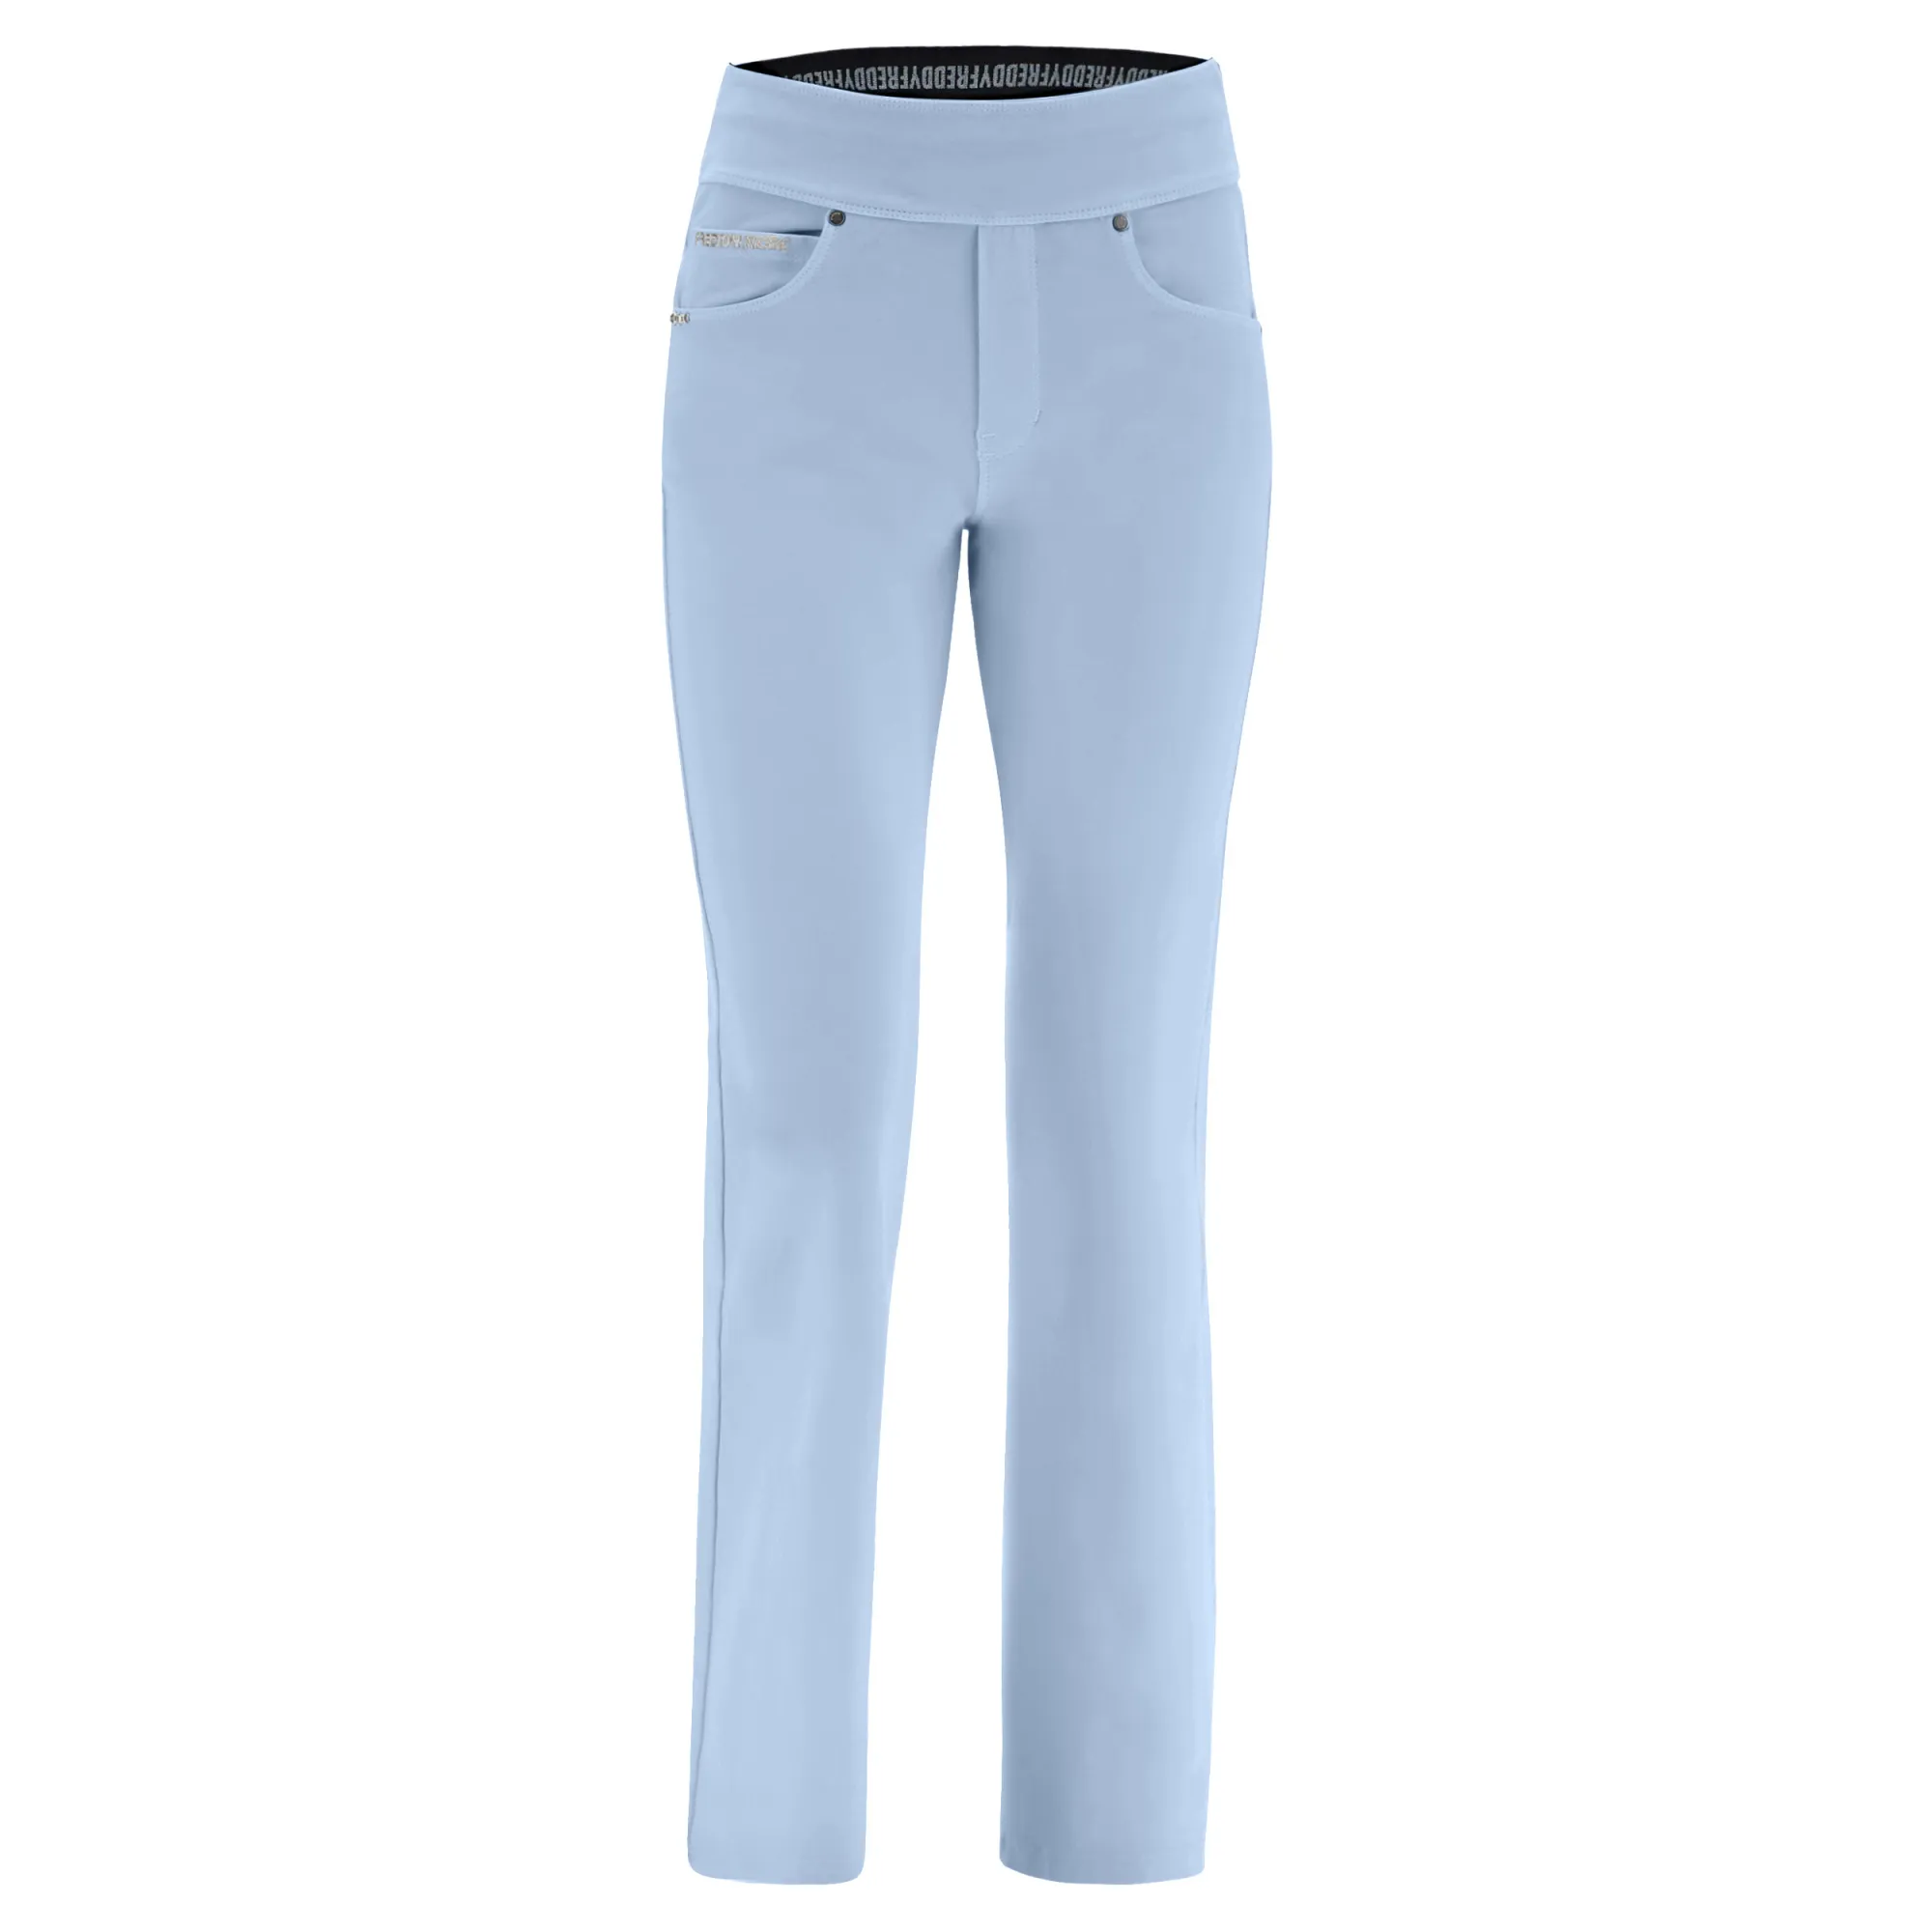 Freddy N.O.W.® Yoga Damen Comfort Hose - Mid Waist Straight - umschlagbarer Taillenbund - Garment Dyed - Grau-Blau - C54